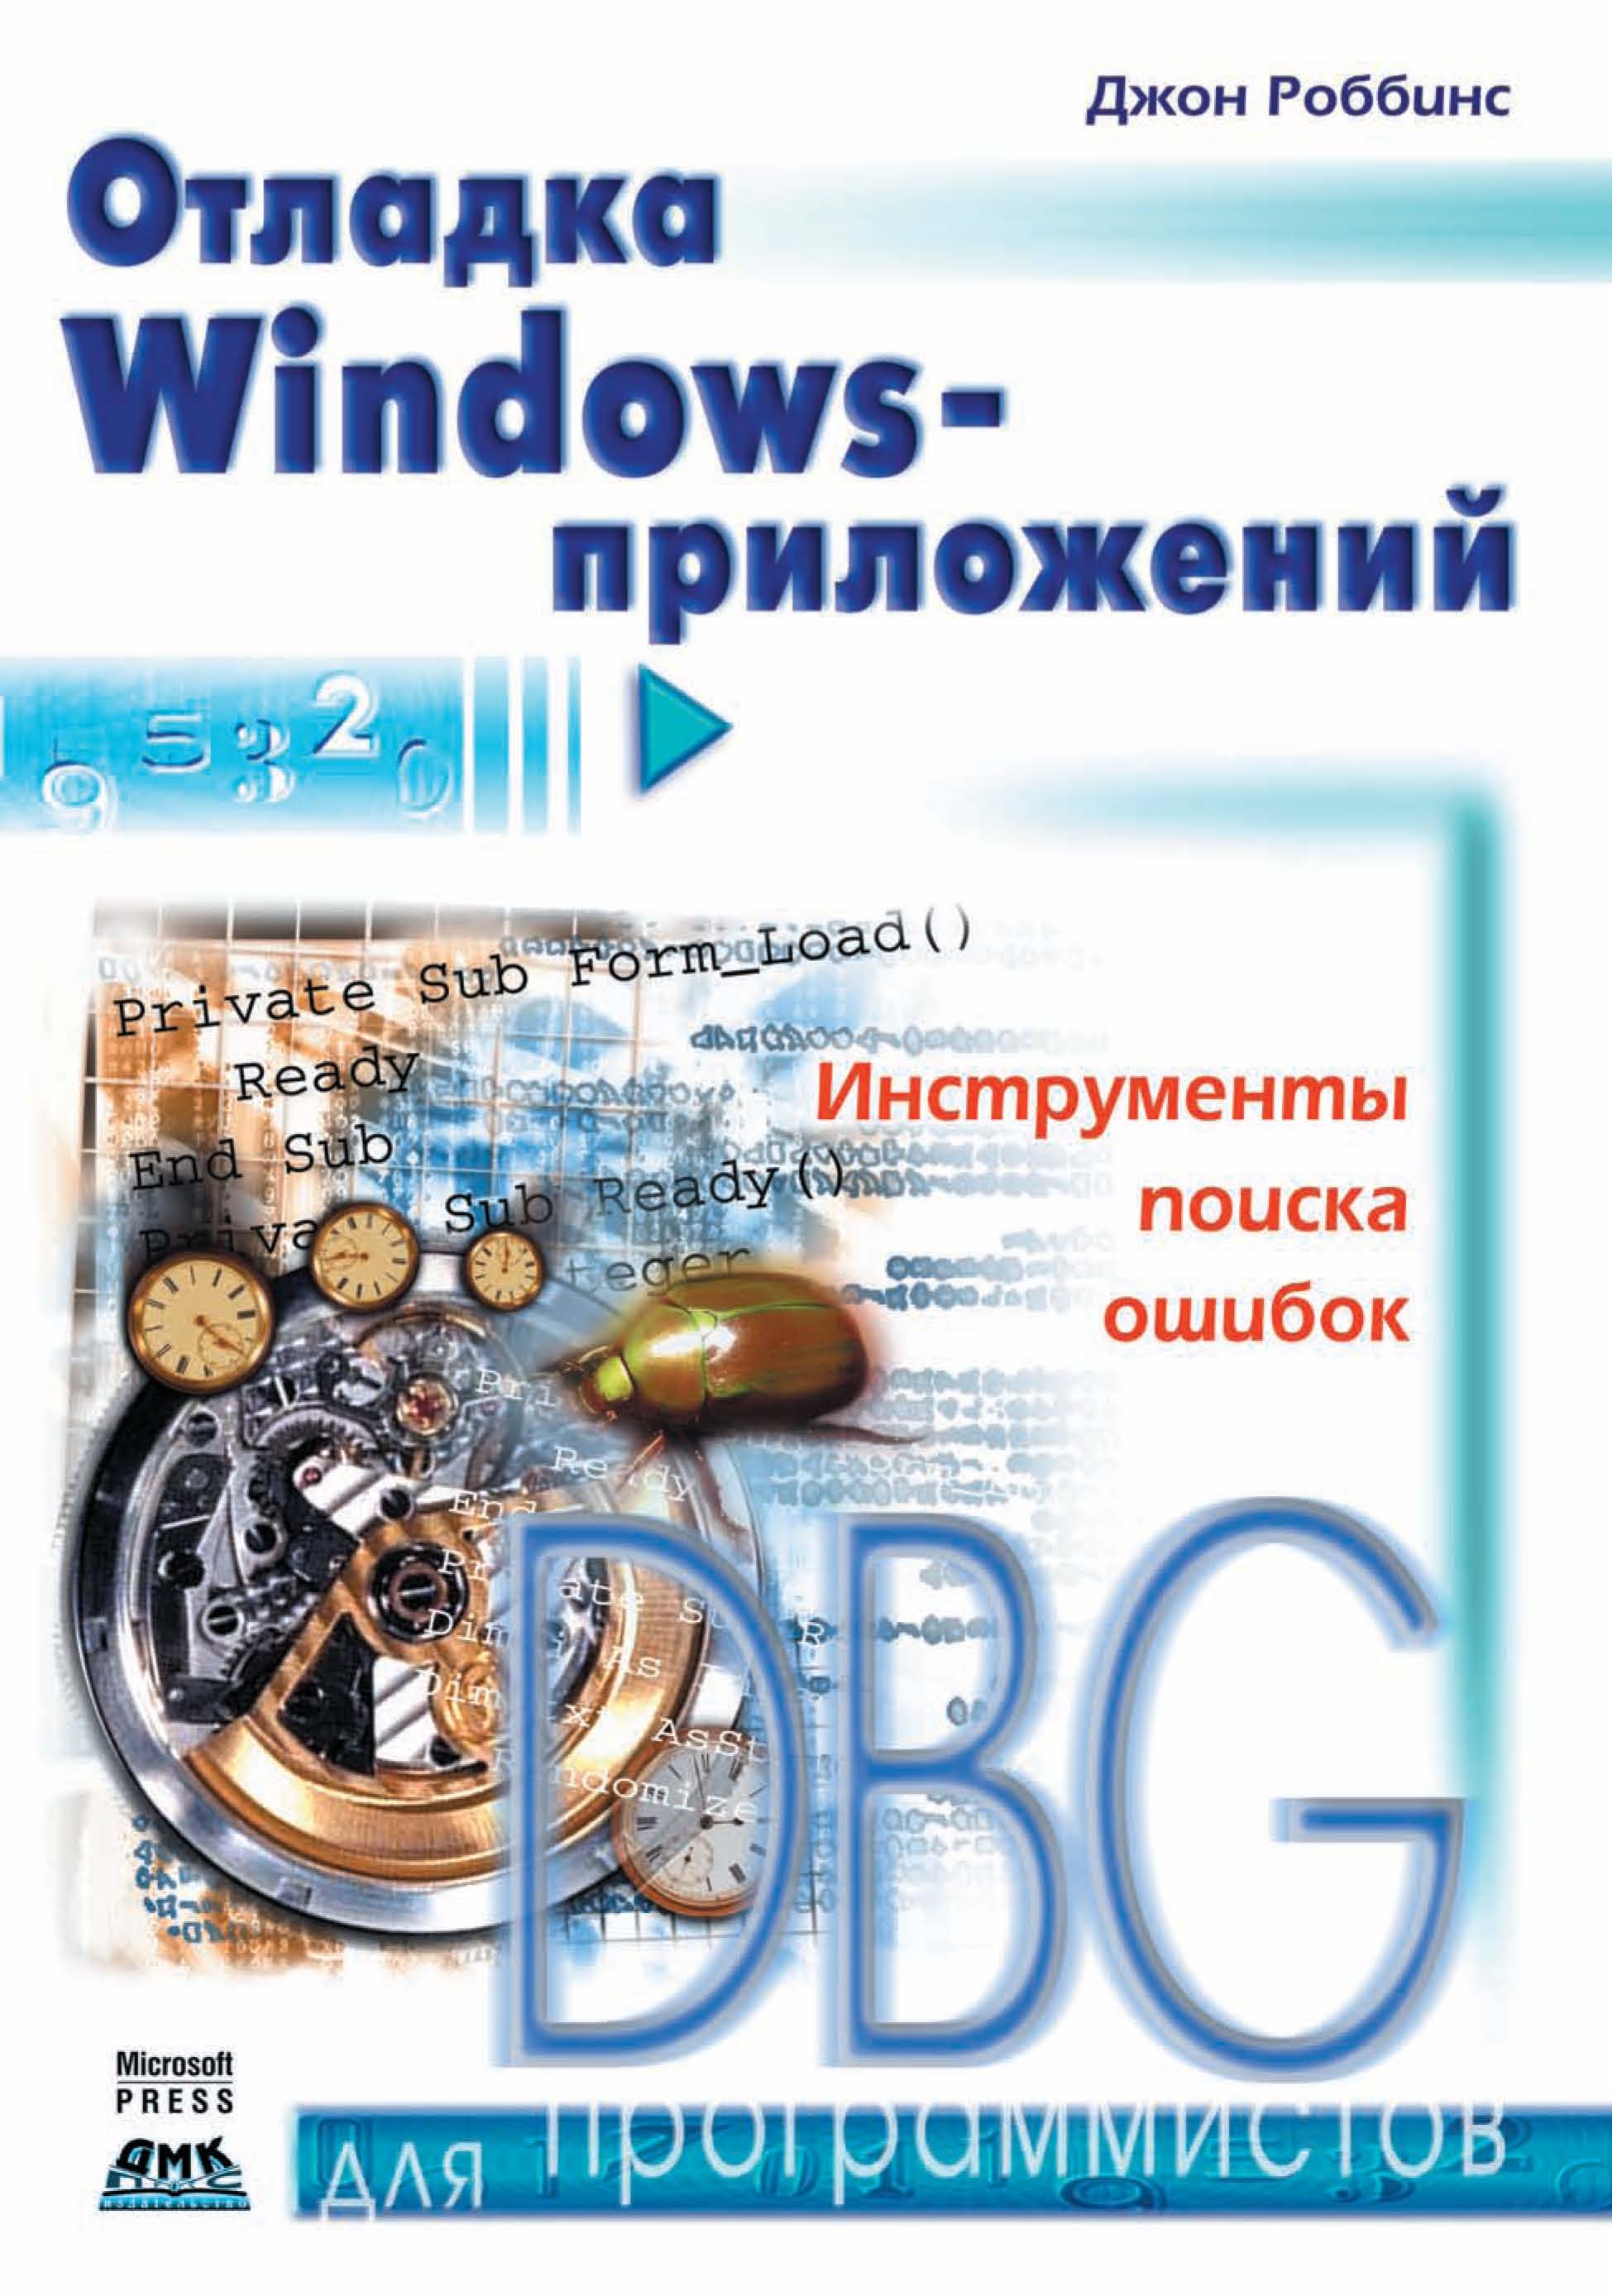 Книга Для программистов (ДМК Пресс) Отладка Windows-приложений созданная Джон Роббинс, Н. О. Сомова может относится к жанру зарубежная компьютерная литература, программирование. Стоимость электронной книги Отладка Windows-приложений с идентификатором 44867797 составляет 349.00 руб.